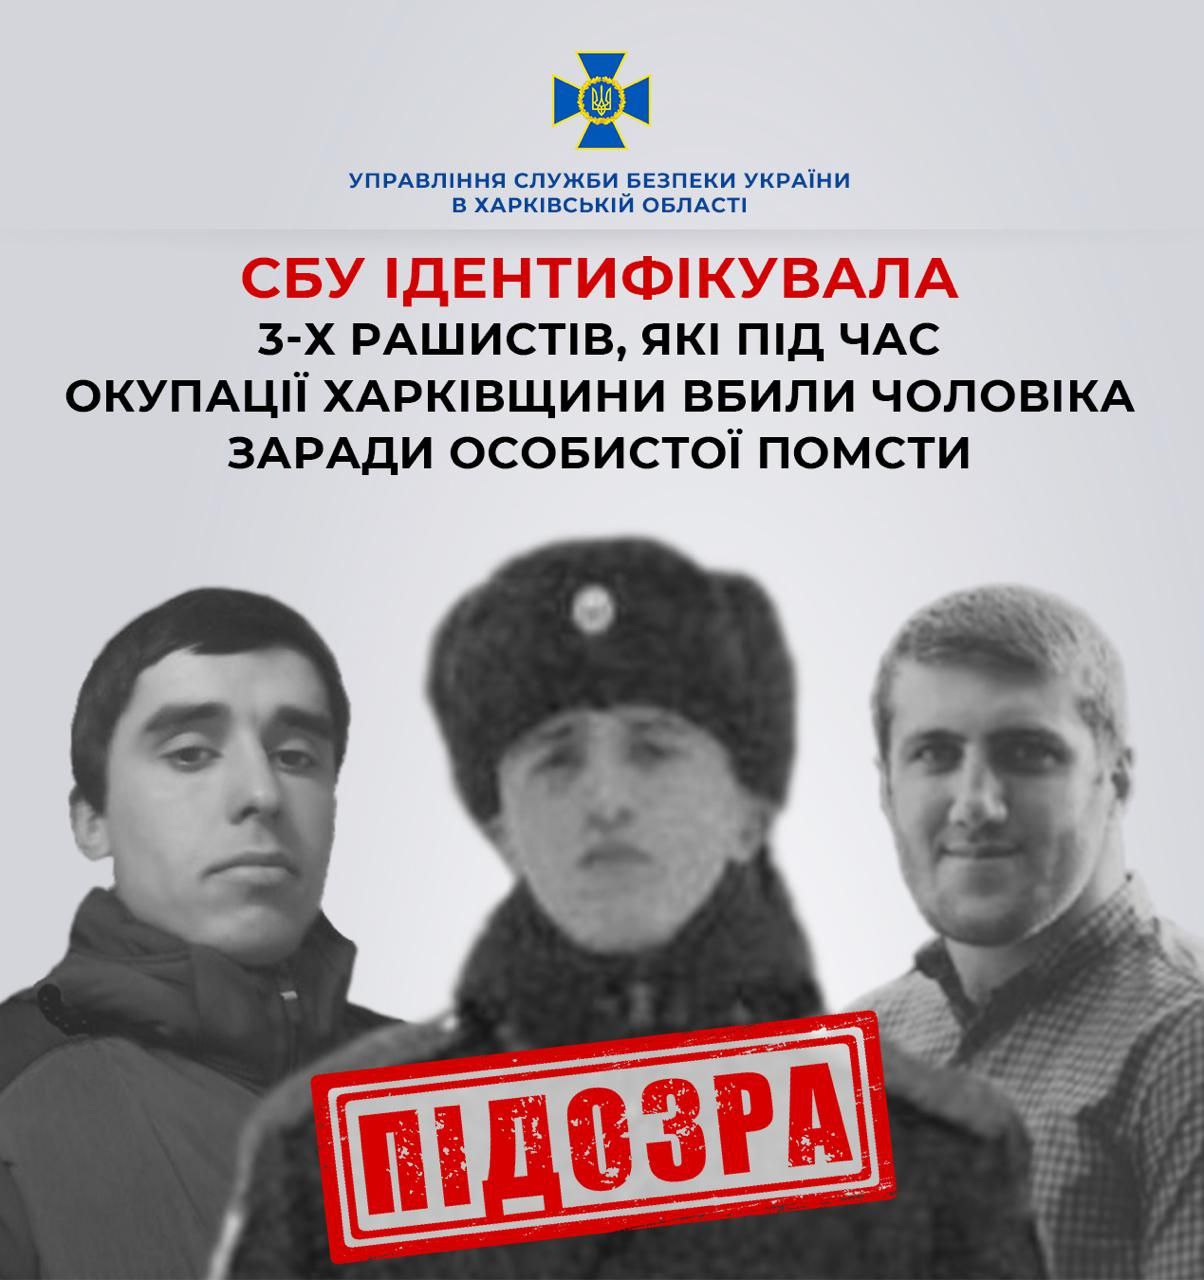 Застрелили жителя Харківщини заради помсти: СБУ назвала імена трьох окупантів